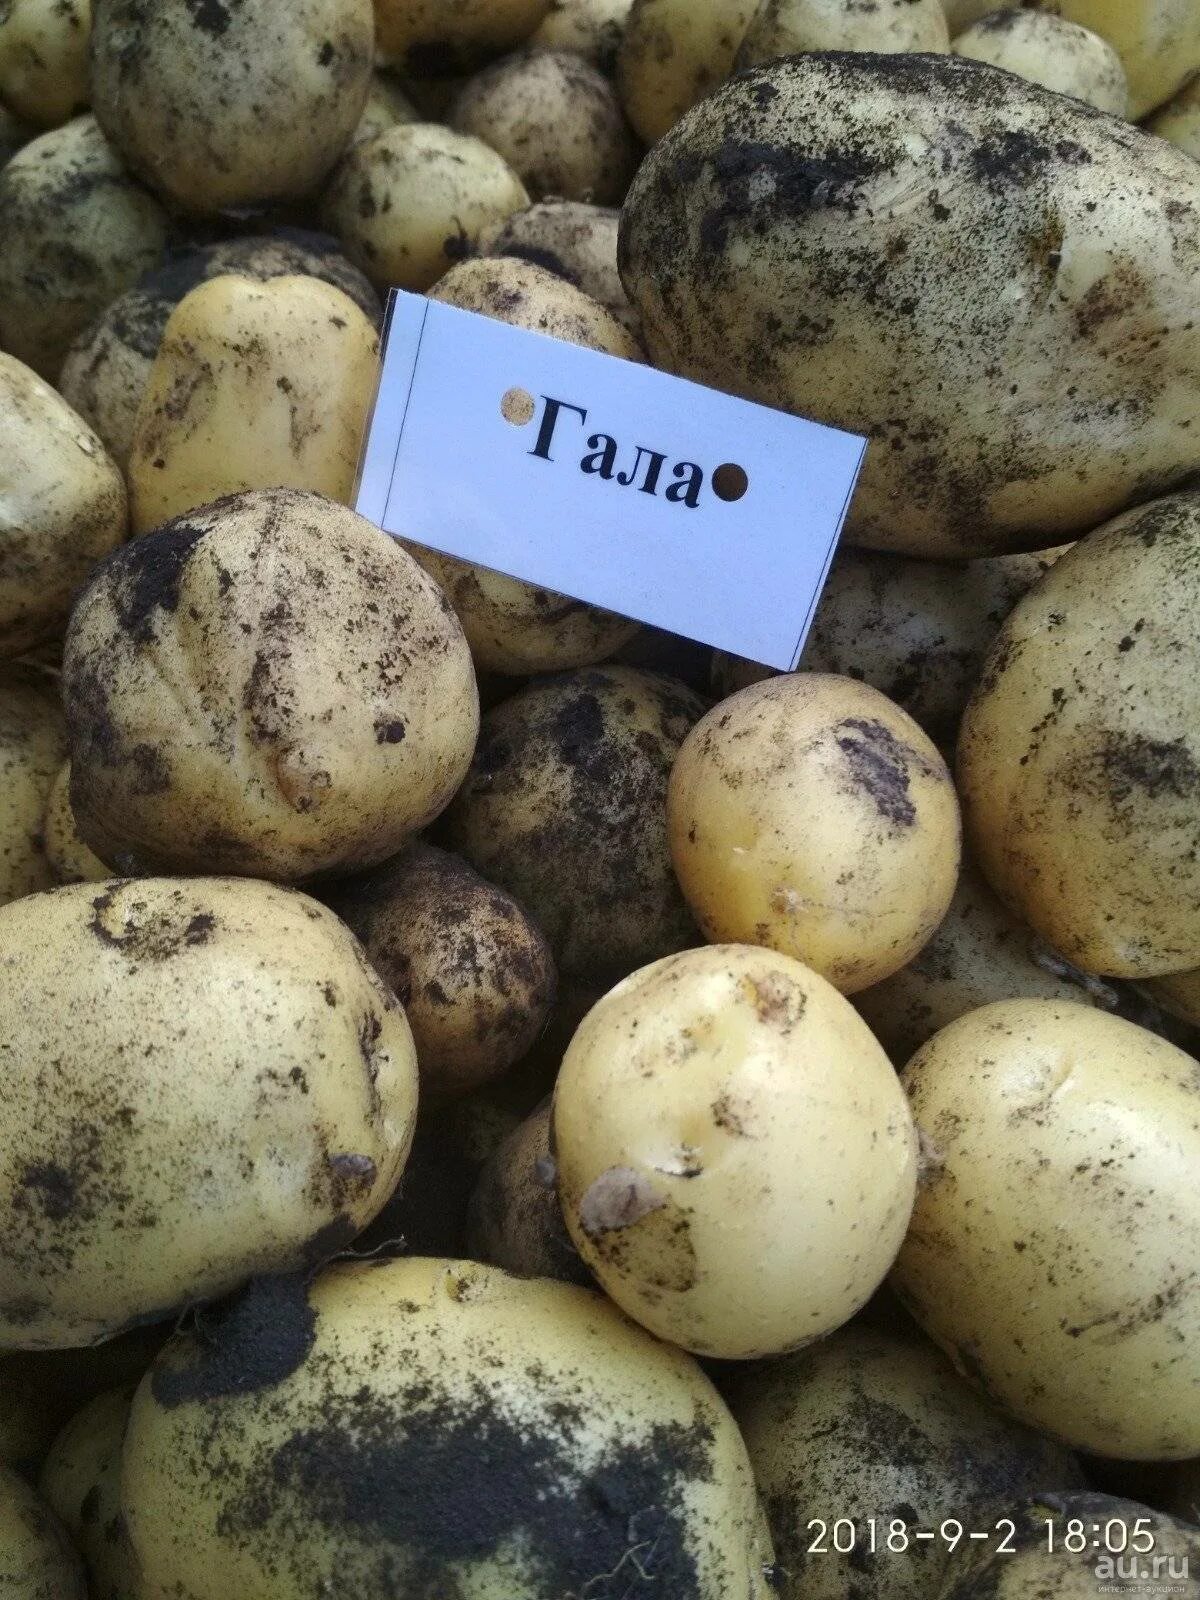 Сорта картофеля фото с названиями и описанием. Сорт картофеля Гала. Семенной картофель. Сорт Гала.